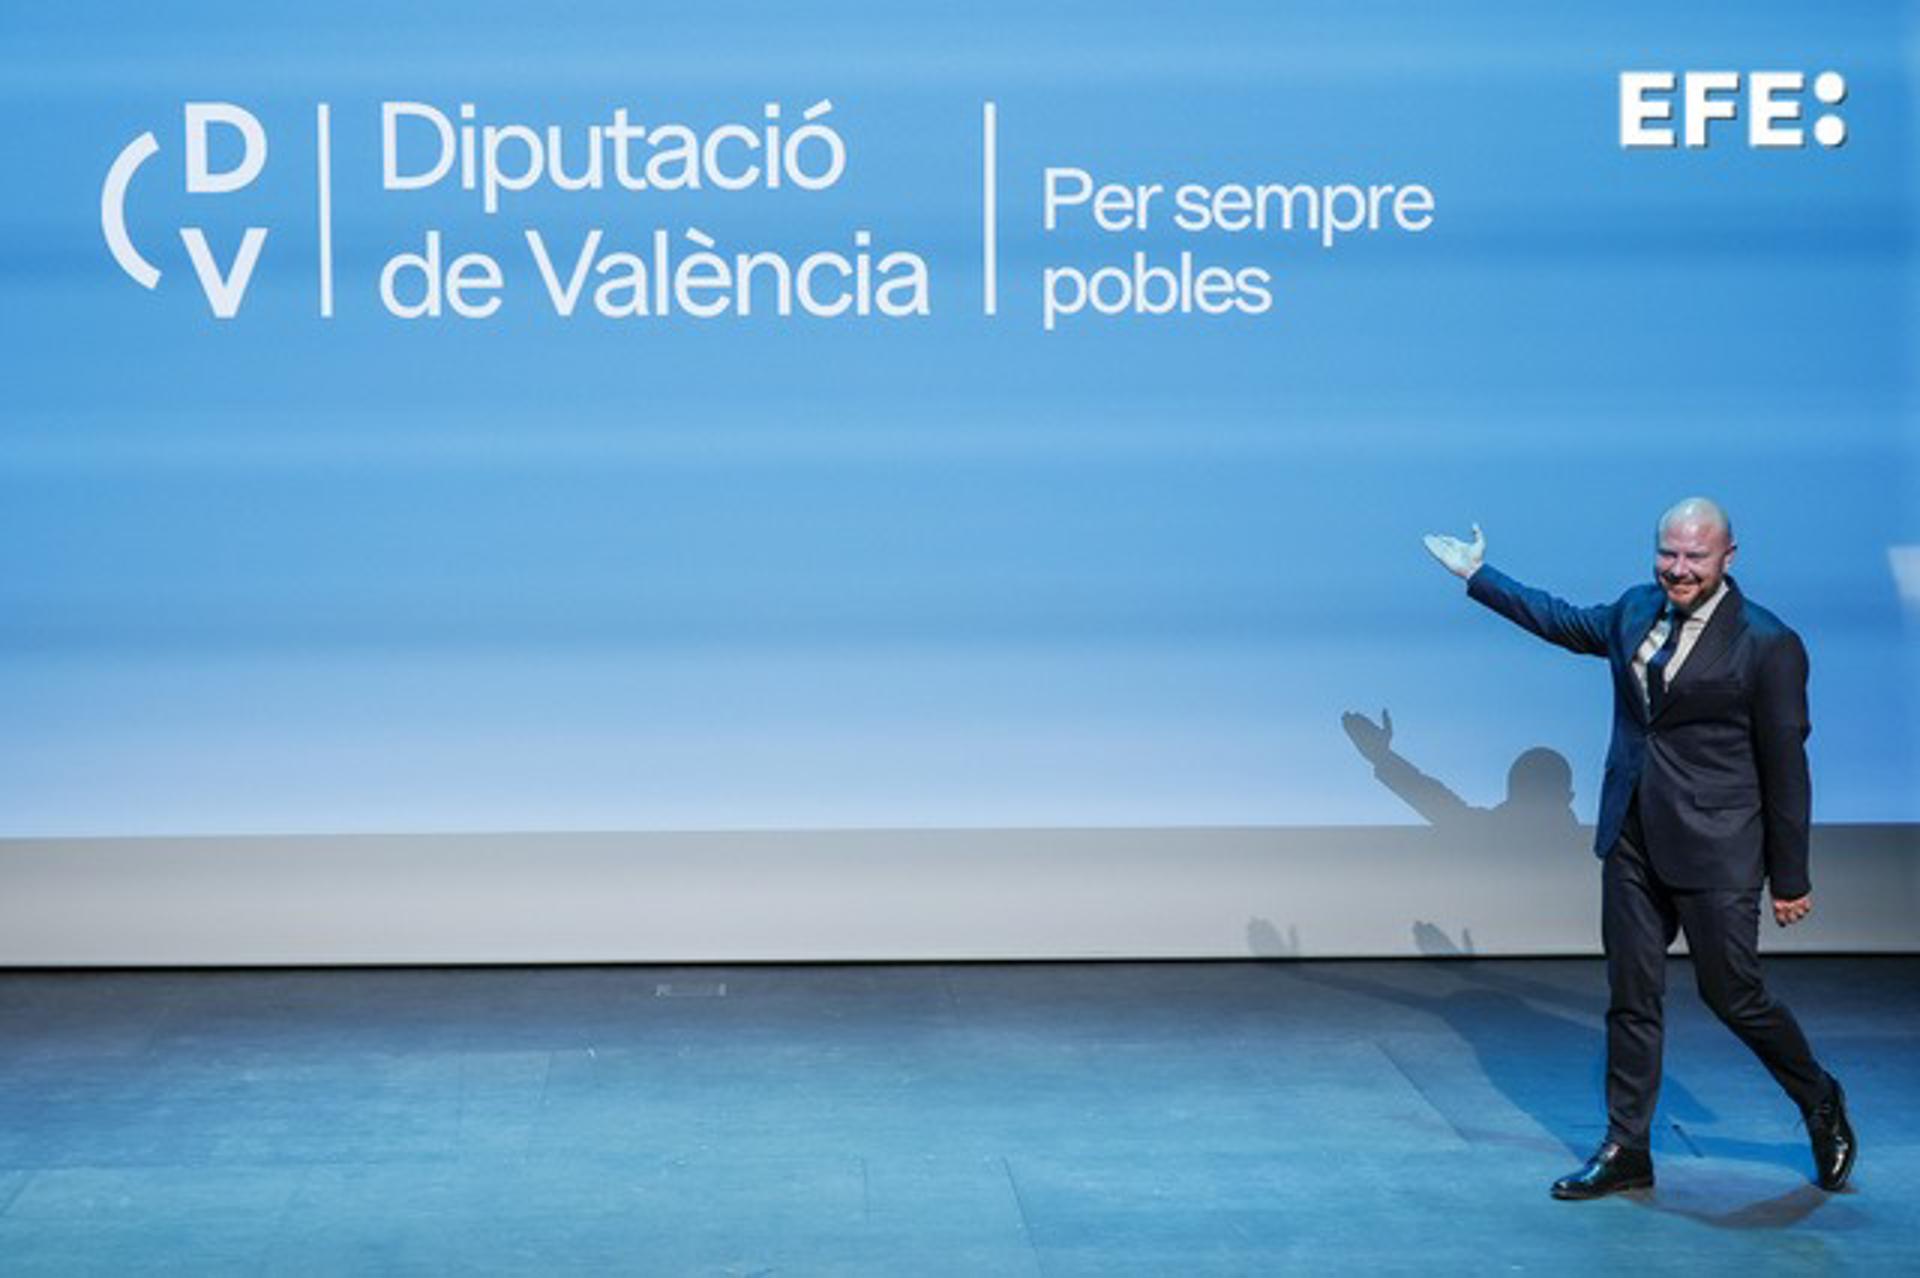 El presidente de la Diputación de Valencia, Toni Gaspar, en el acto en el que se conmemora sus 210 años de historia y se presenta la nueva imagen corporativa de la institución. EFE/ Biel Aliño